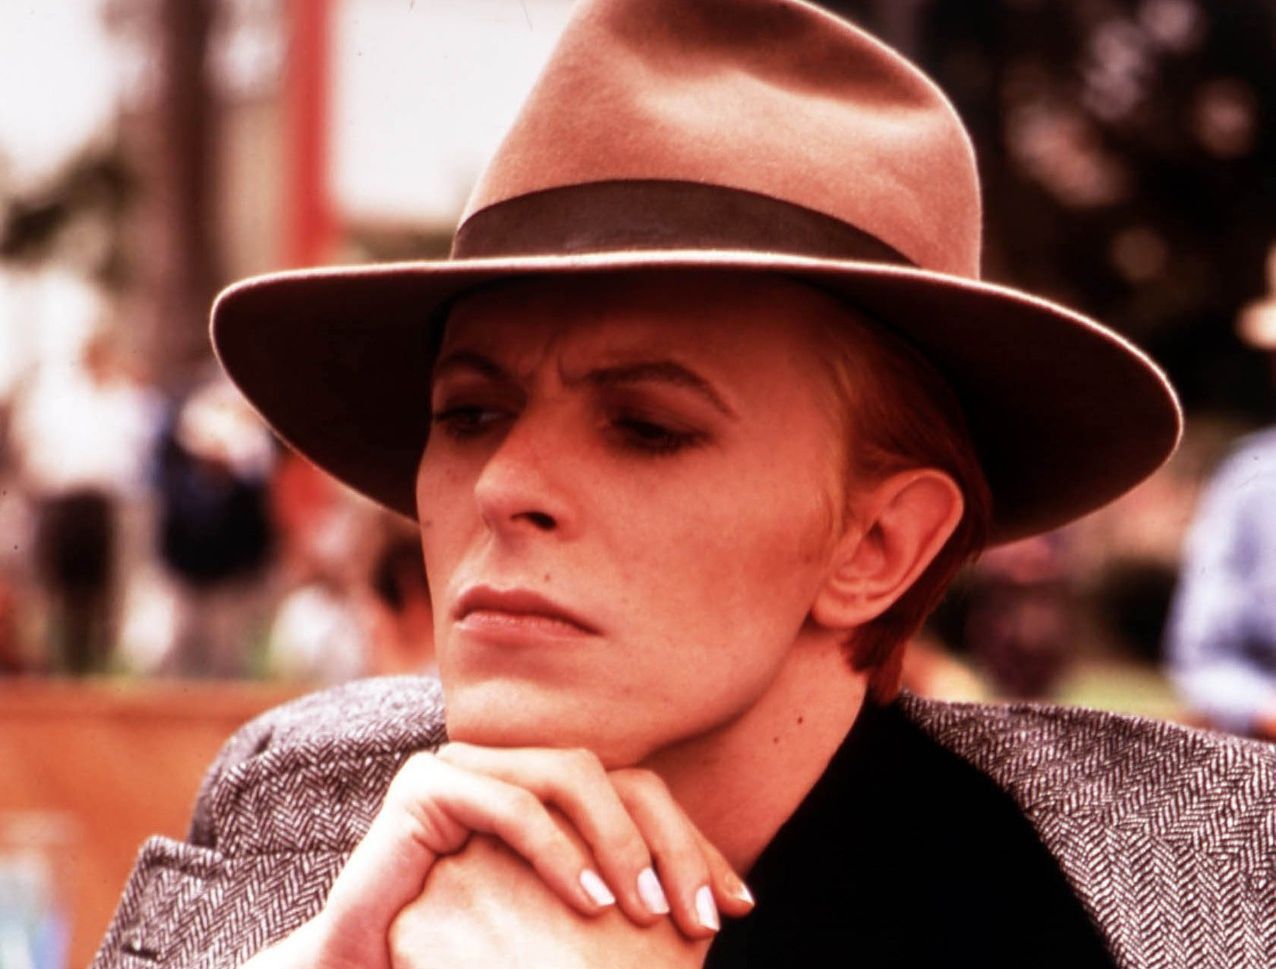 "Efekt Bowiego". Muzyczna inspiracja świata mody